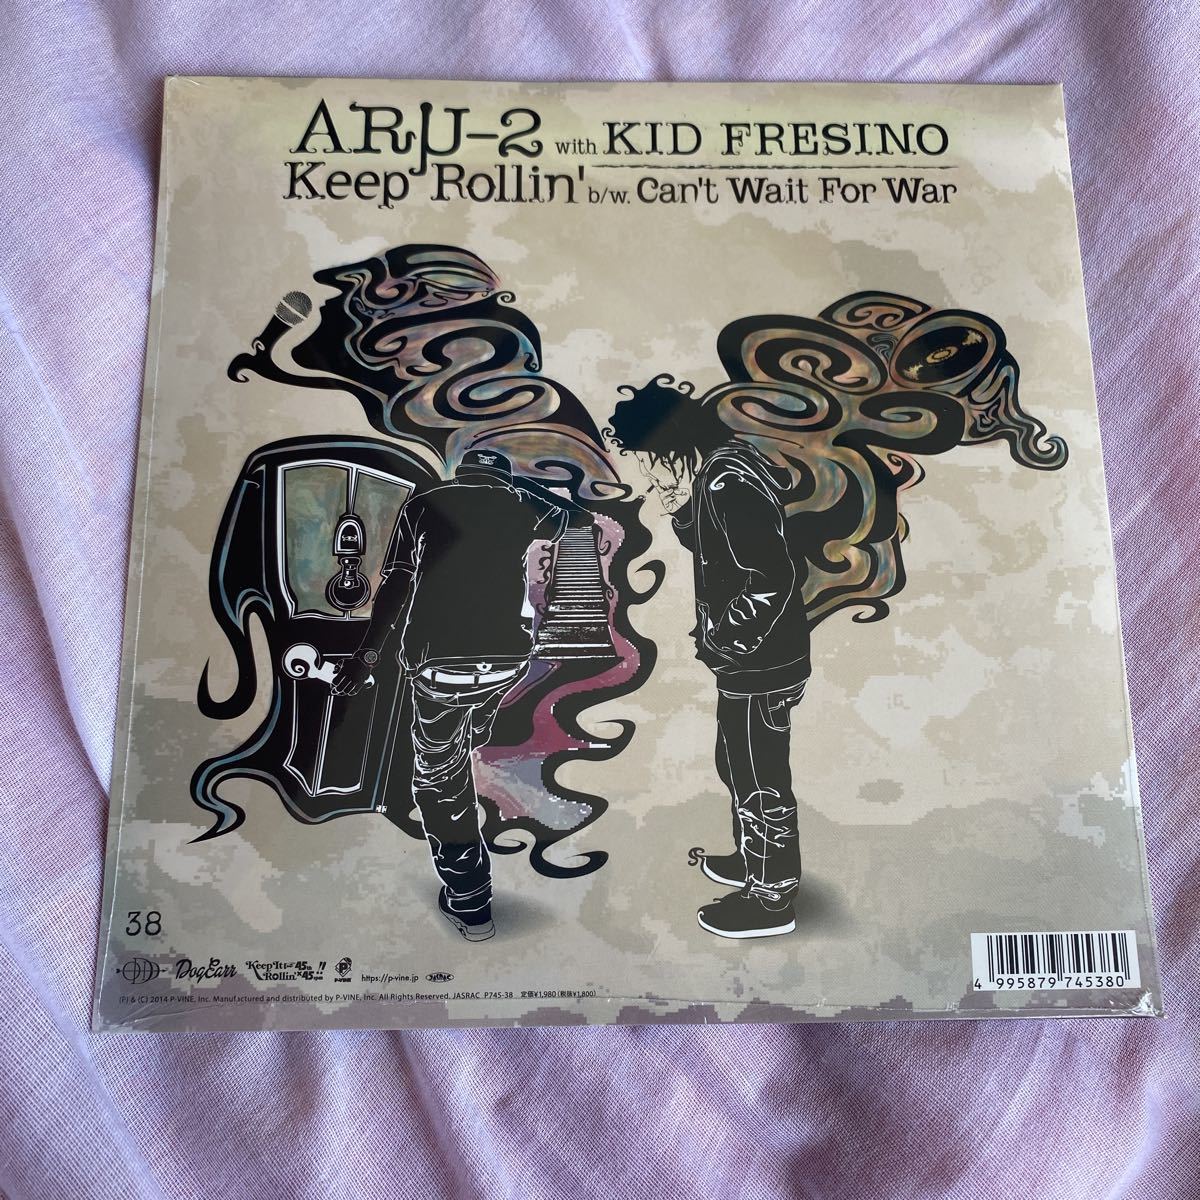 新品未開封 レア盤 7インチ Aru-2 with KID FRESINO/Keep Rollin' Can't Wait For War レコード 